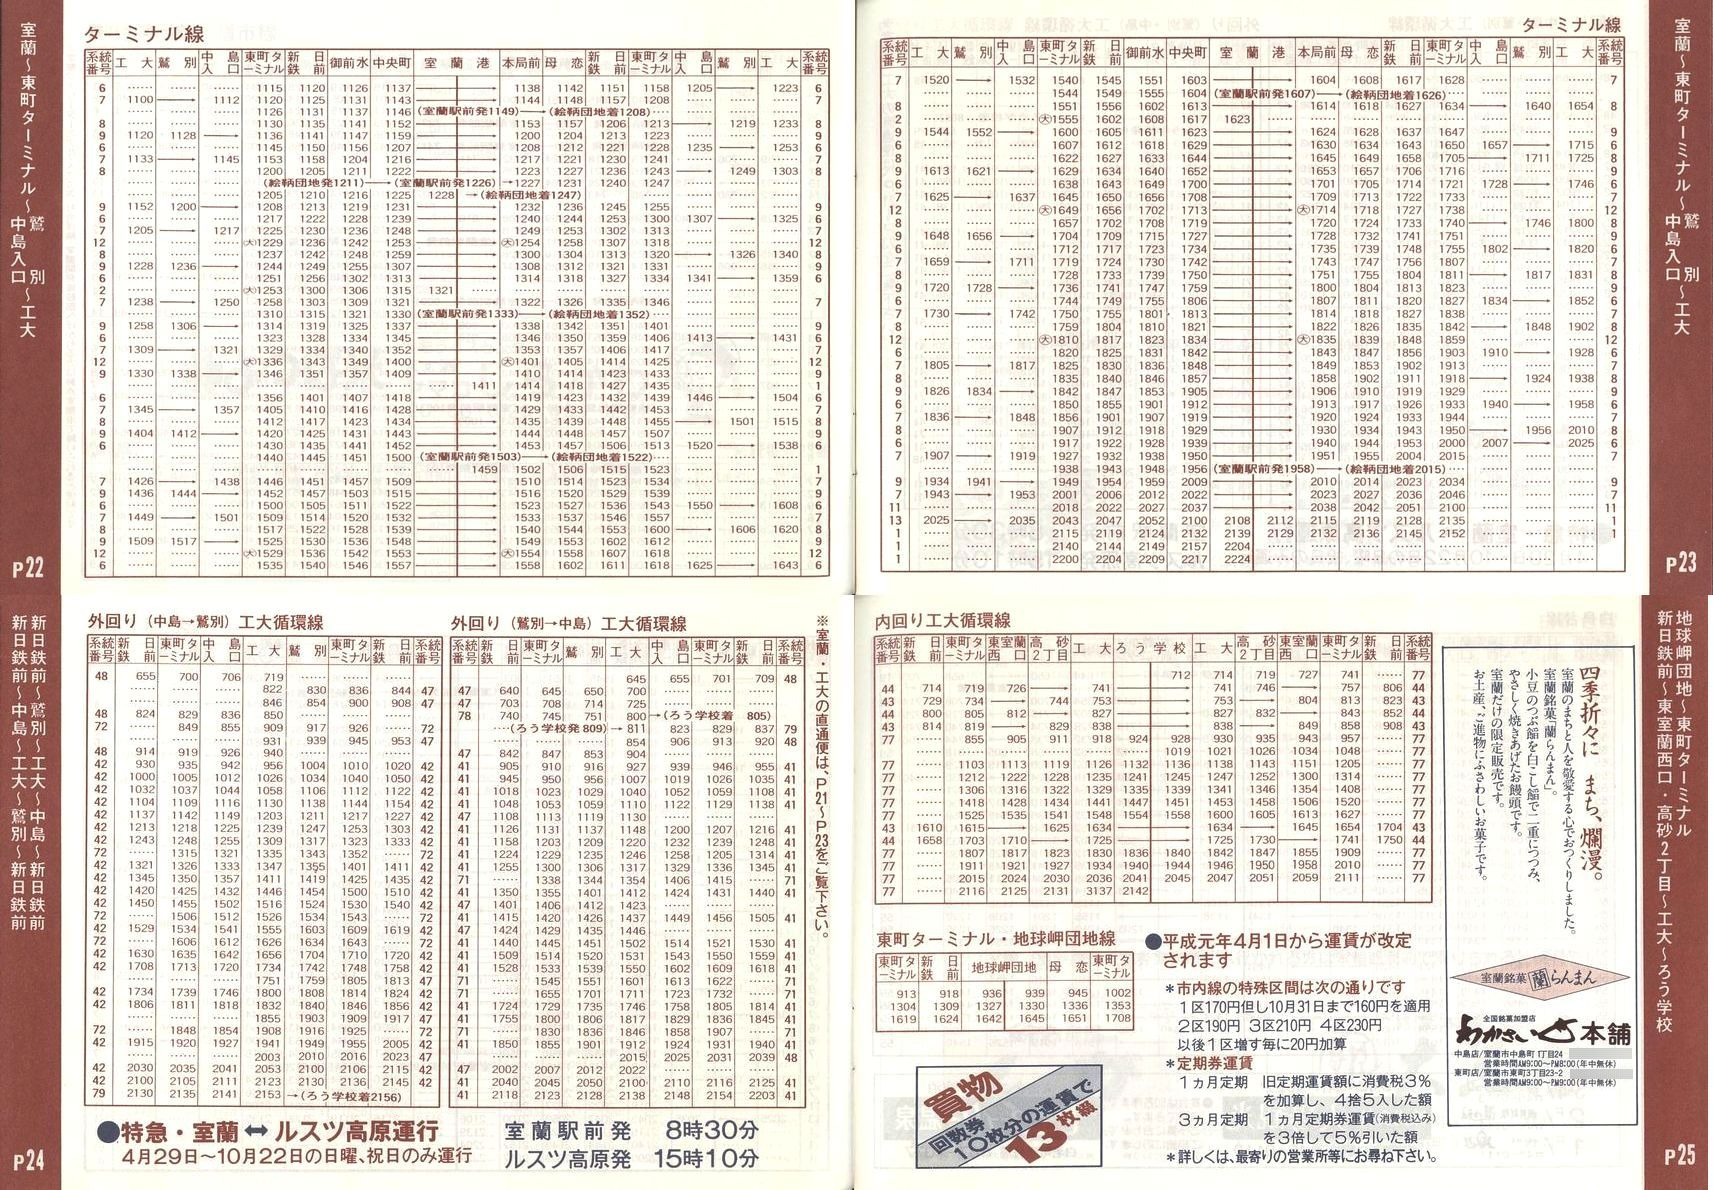 1989-04-01改正_道南バス_室蘭市内線冊子時刻表22-25